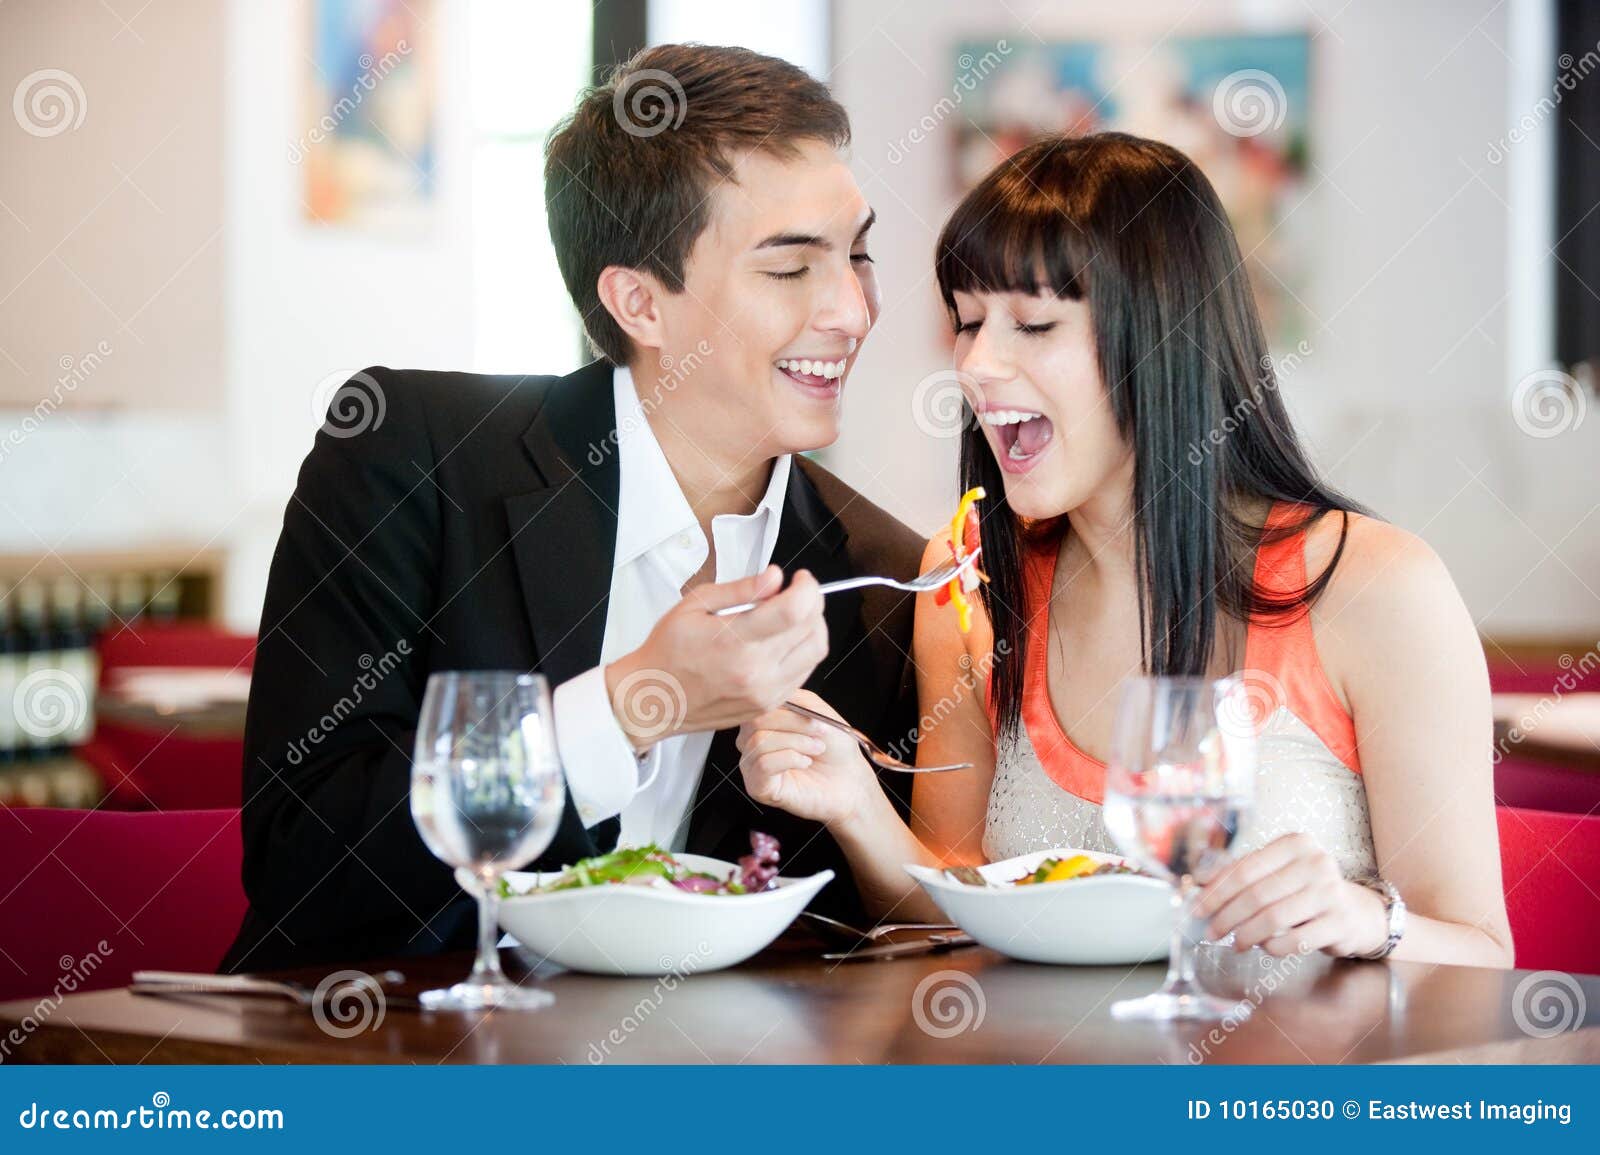 man feeding girlfriend